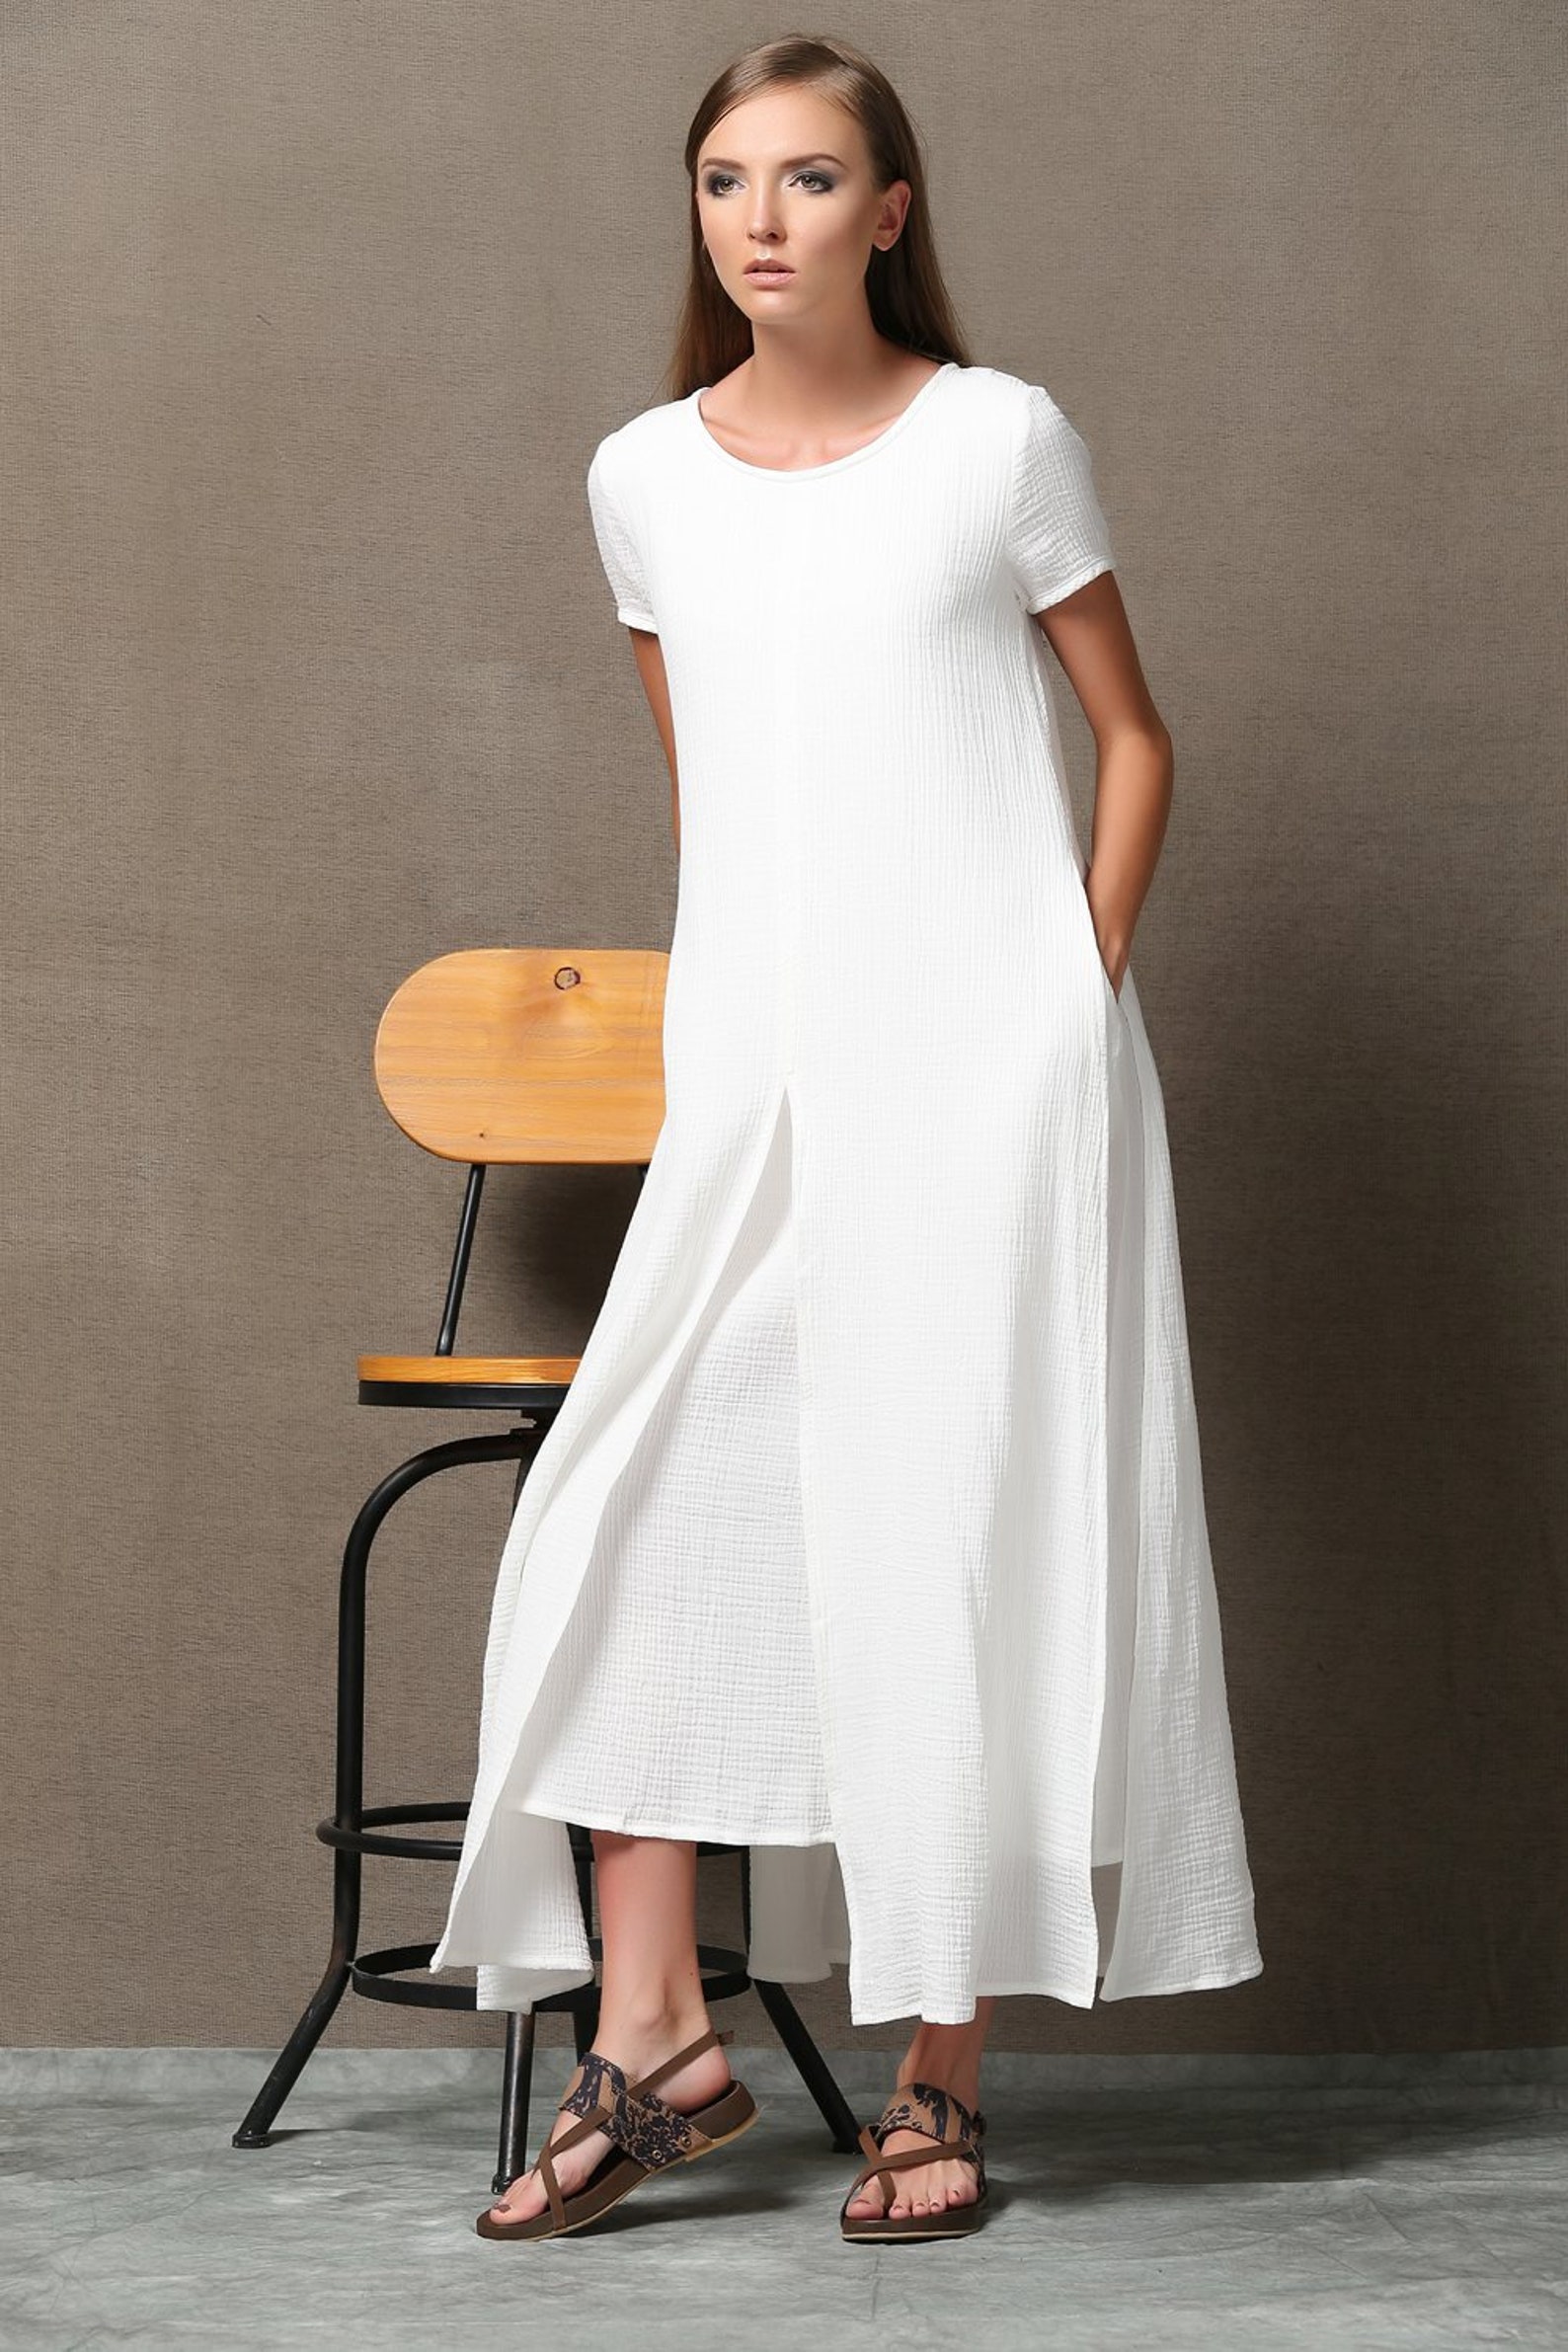 Short Sleeve White Maxi Linen Dress for Women Summer Cotton - Etsy